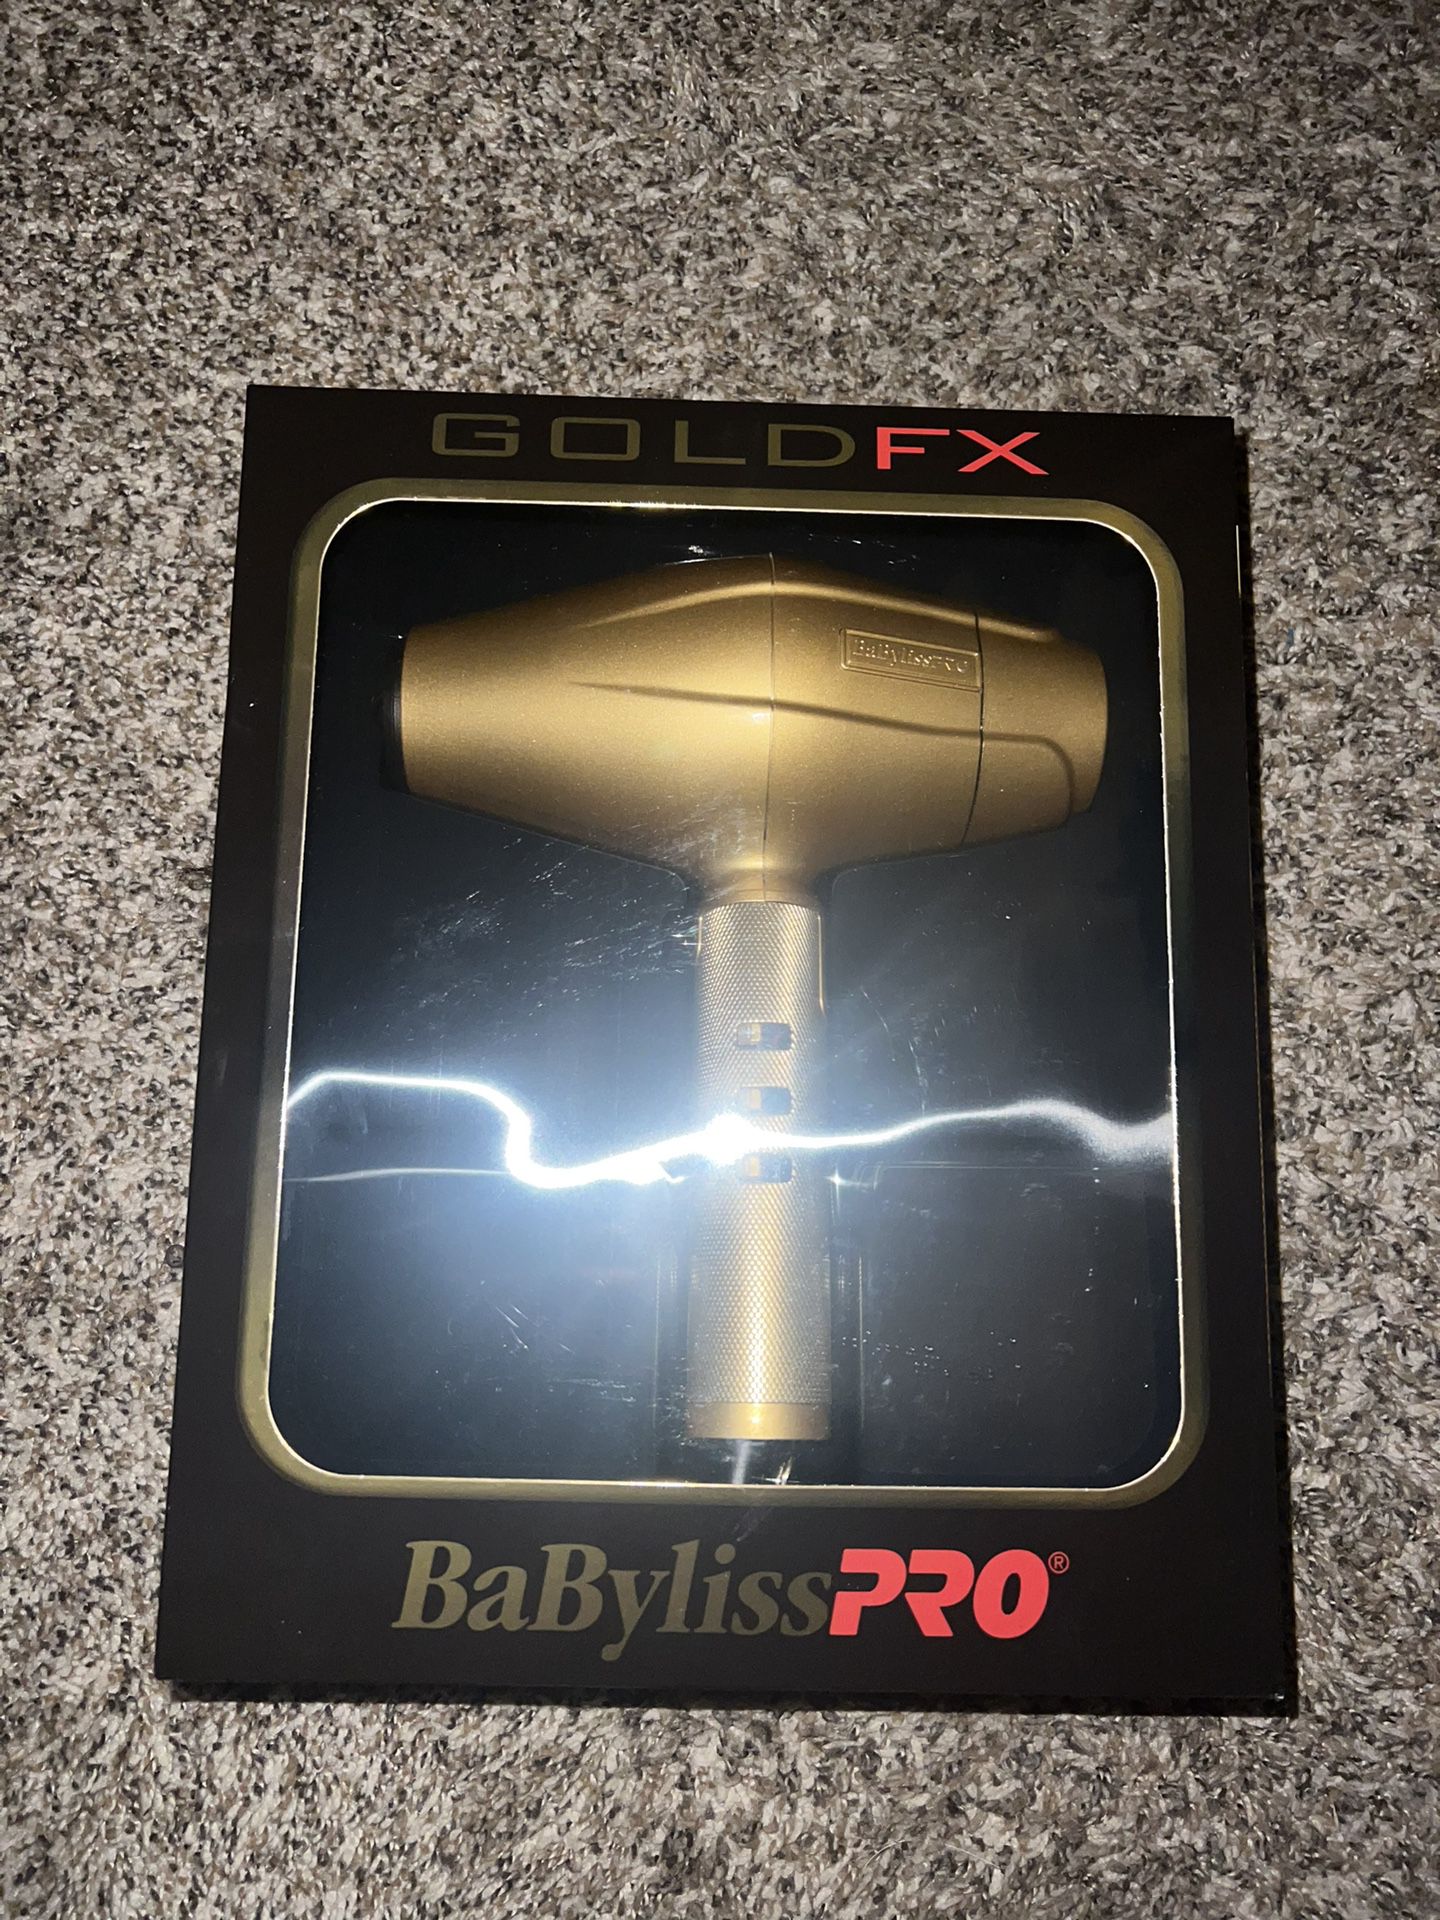 Babyliss Pro GoldFX Hairdryer